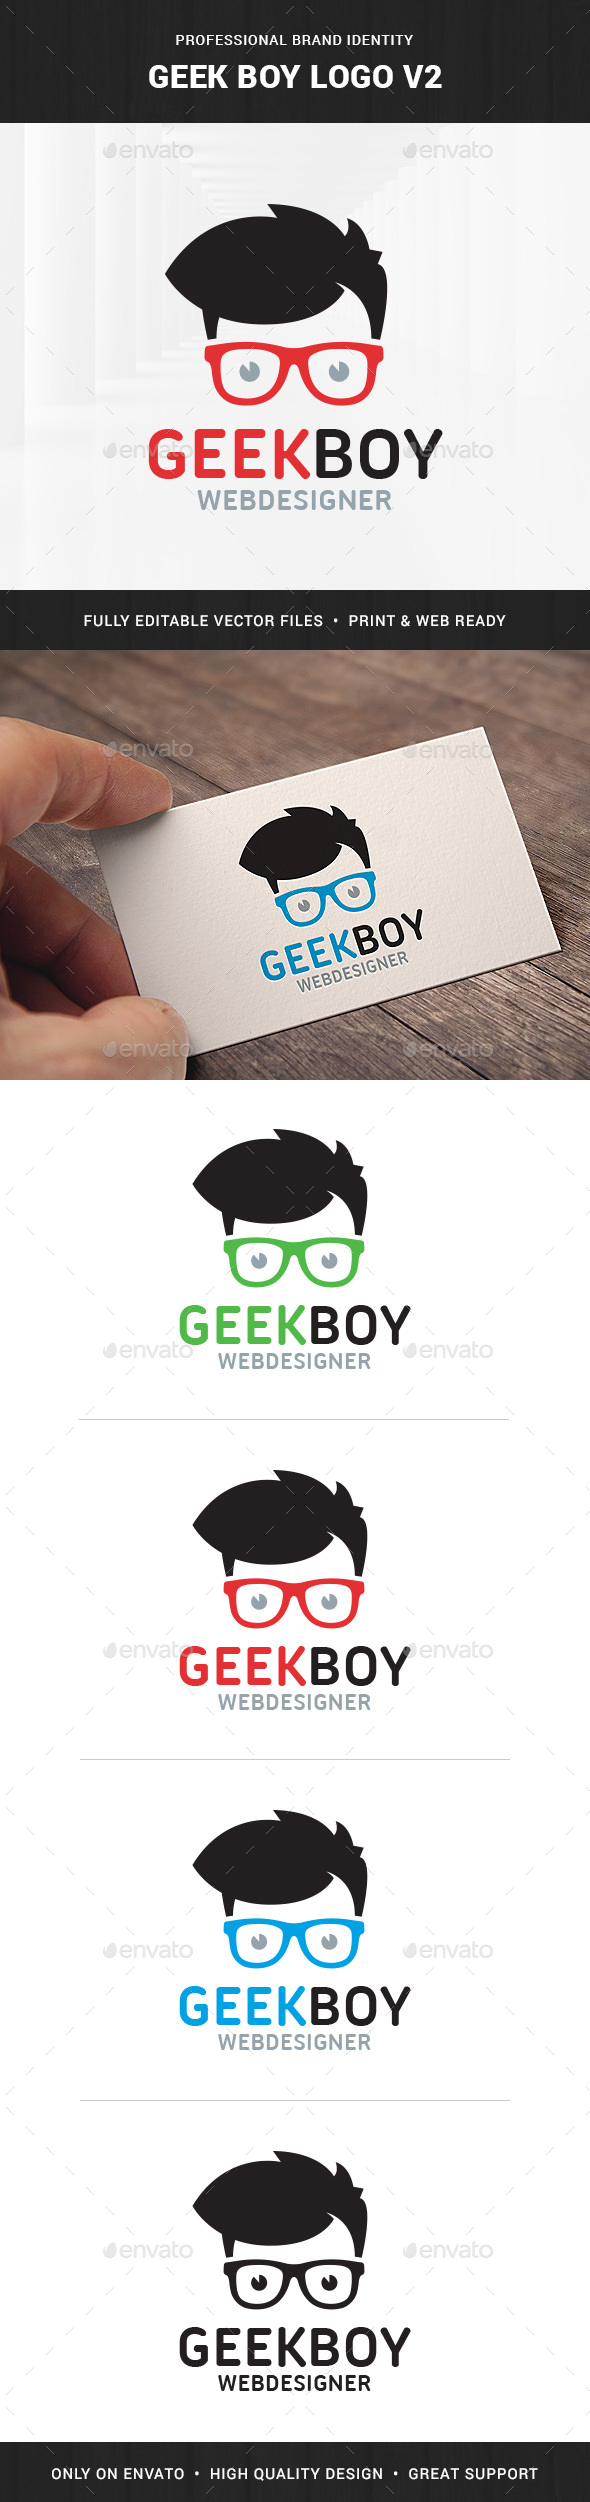 Geek Boy Logo v2